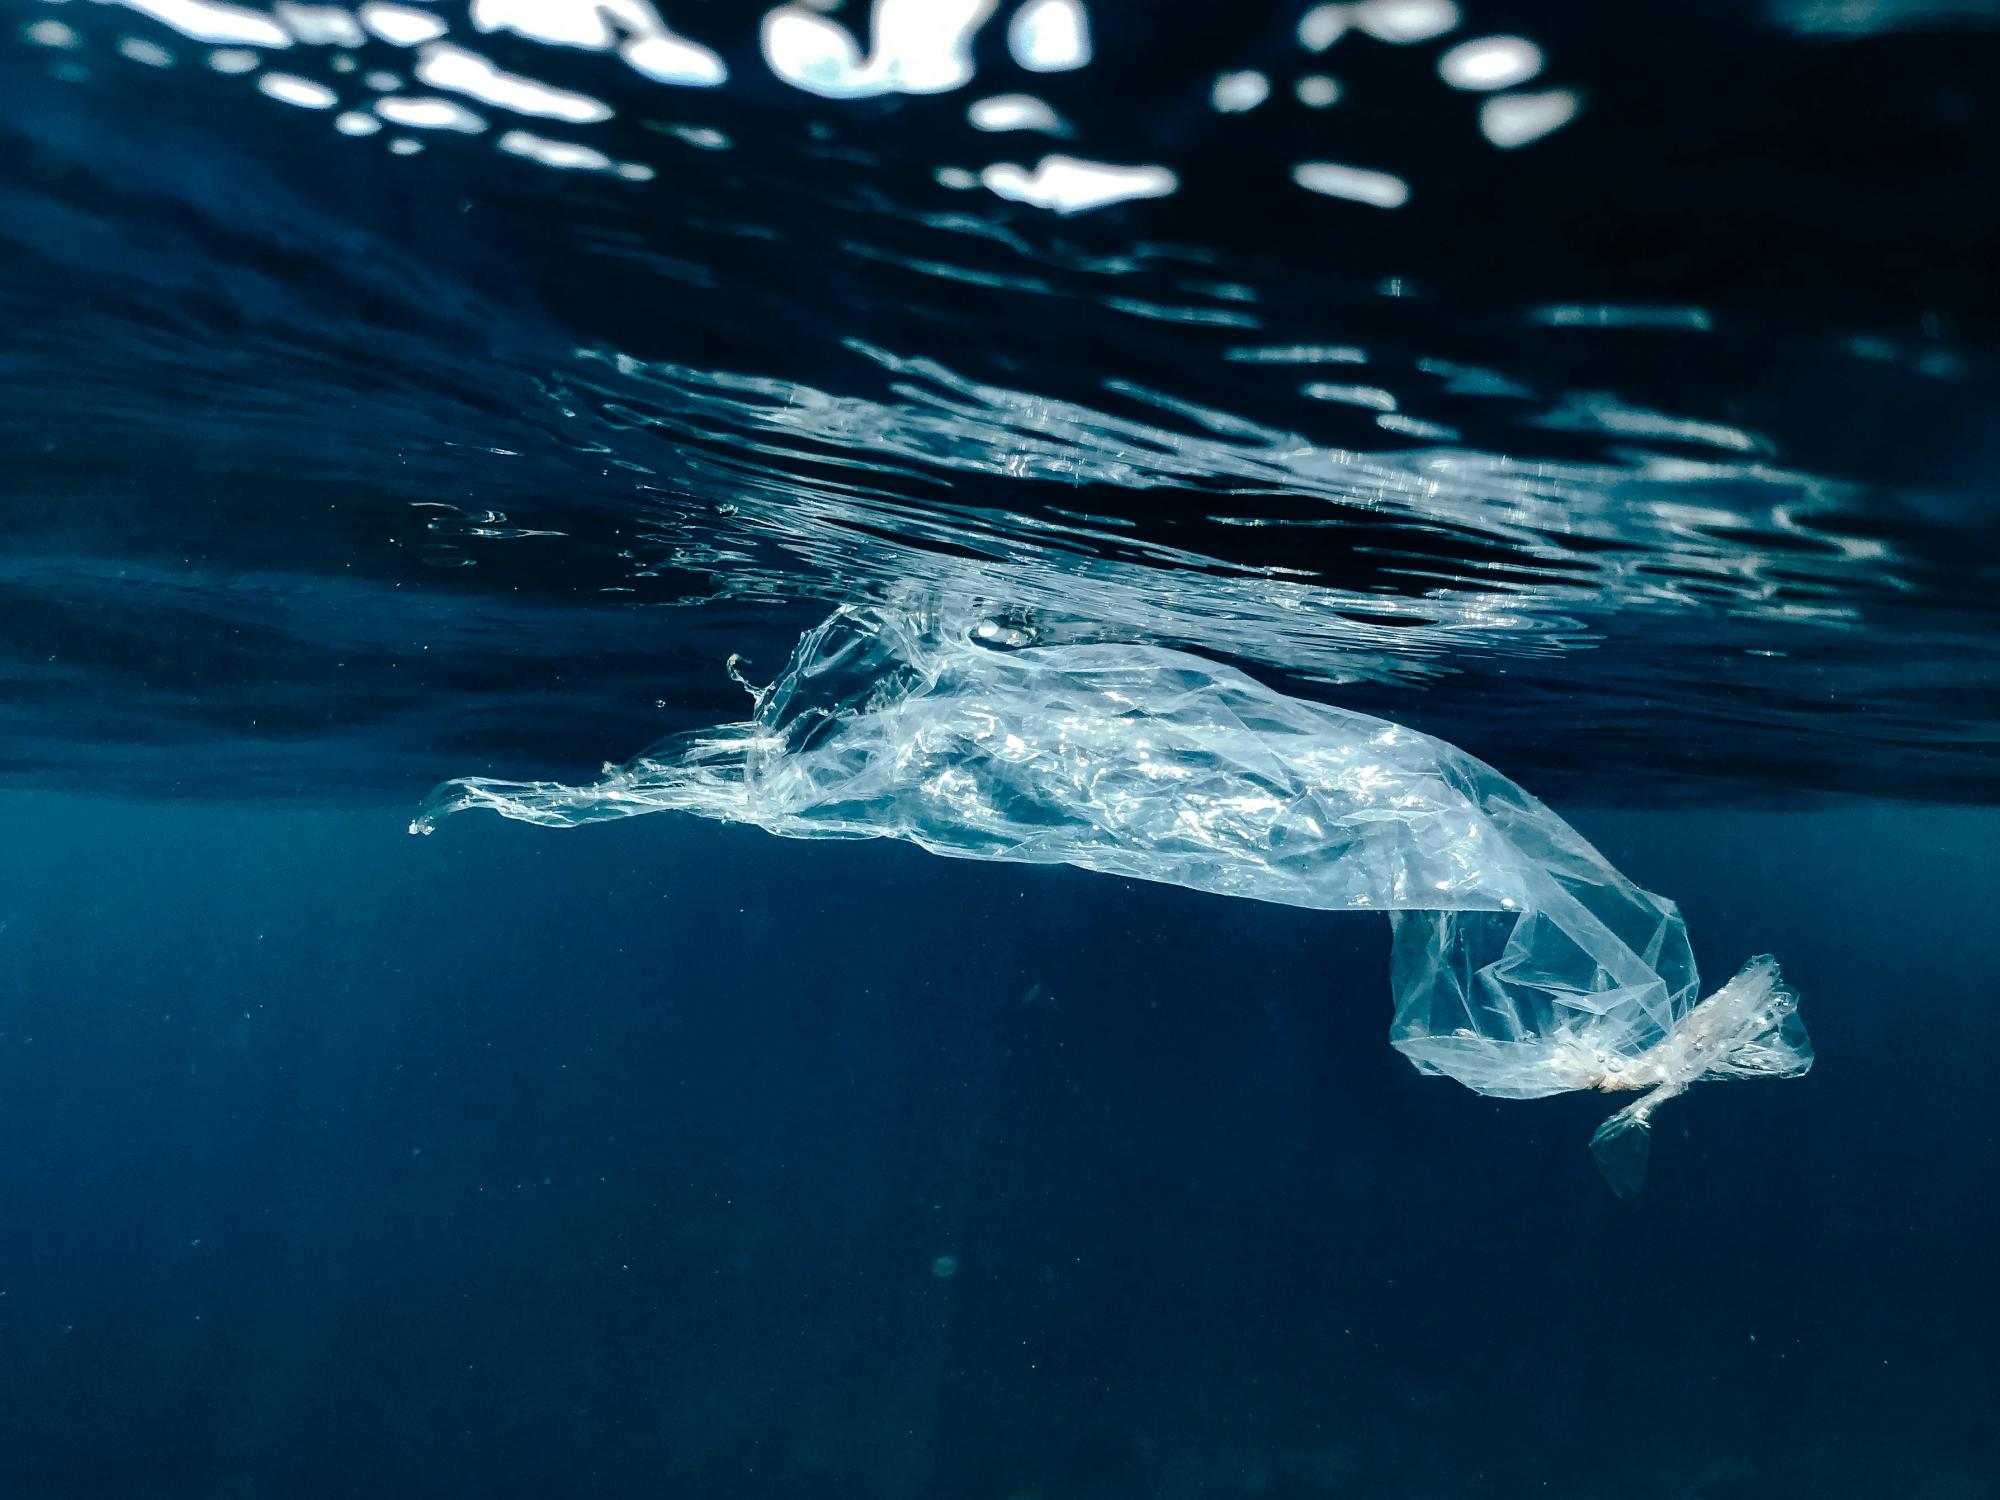 Sin bolsas de plástico es posible: Hoy se conmemora su Día Internacional